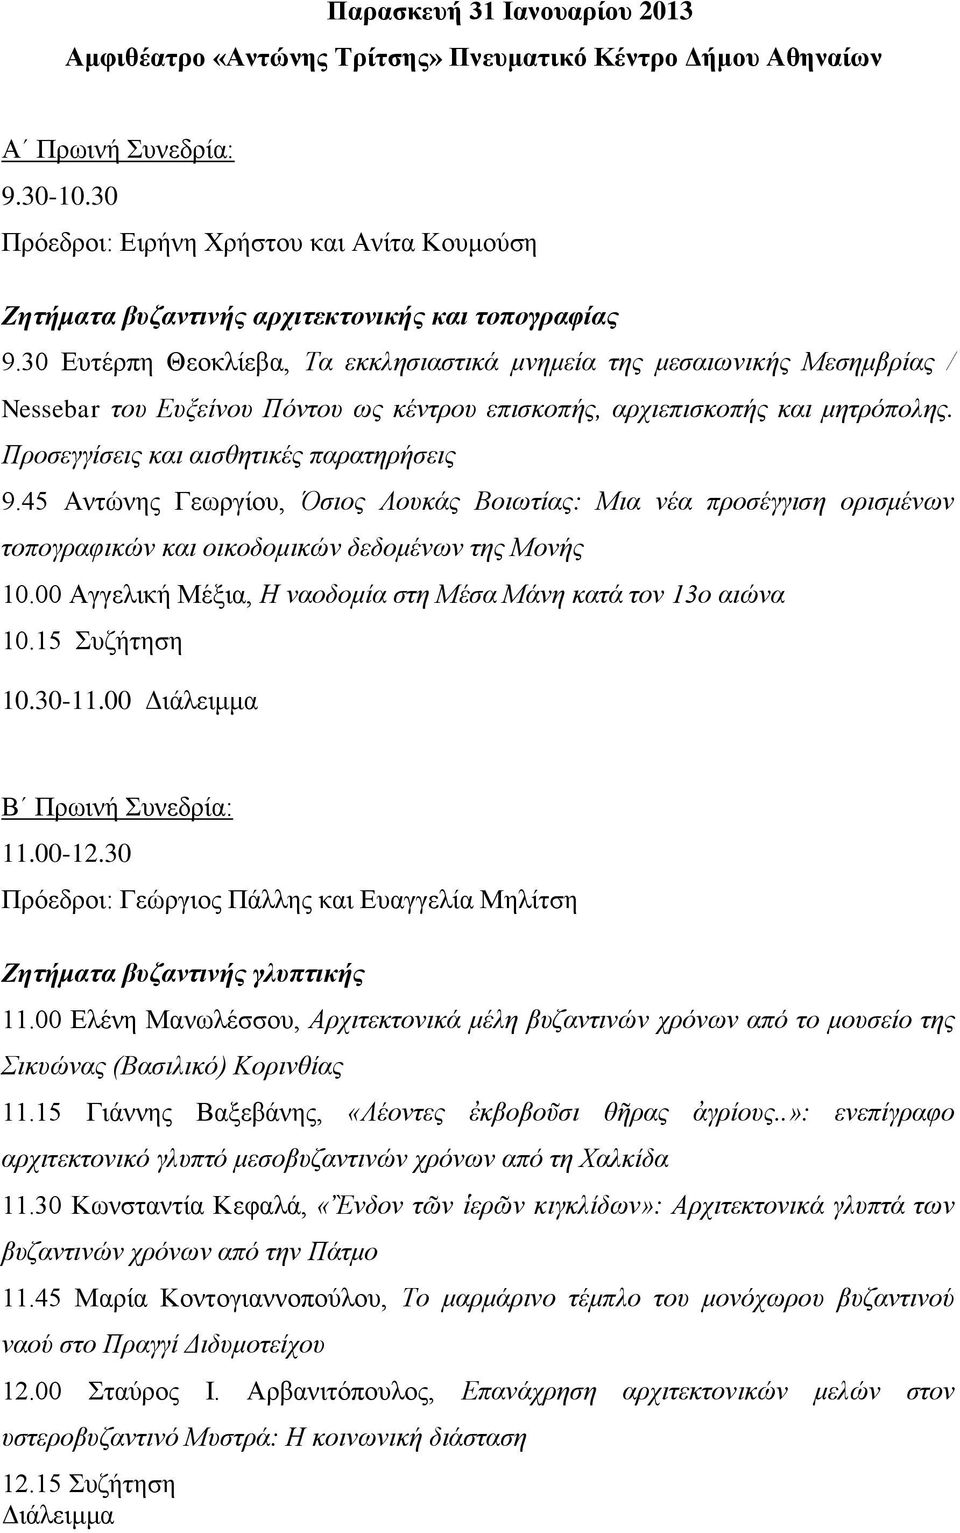 30 Ευτέρπη Θεοκλίεβα, Τα εκκλησιαστικά μνημεία της μεσαιωνικής Μεσημβρίας / Nessebar του Ευξείνου Πόντου ως κέντρου επισκοπής, αρχιεπισκοπής και μητρόπολης. Προσεγγίσεις και αισθητικές παρατηρήσεις 9.